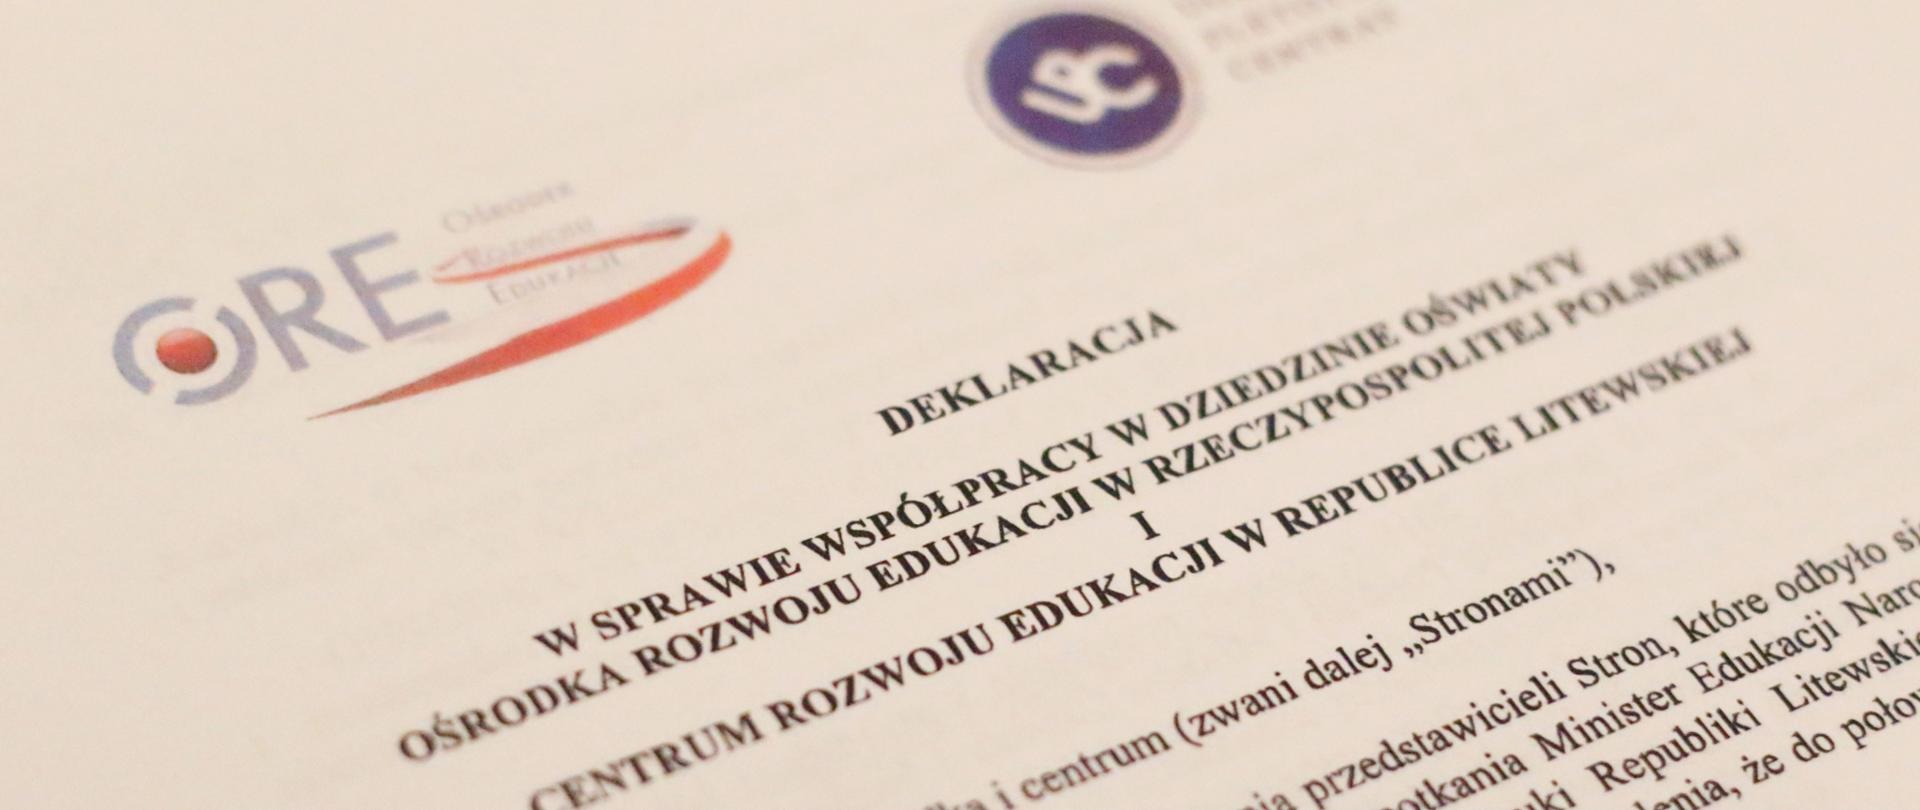 Deklaracja współpracy Ośrodka Rozwoju Edukacji w Warszawie oraz Centrum Rozwoju Edukacji w Republice Litewskiej